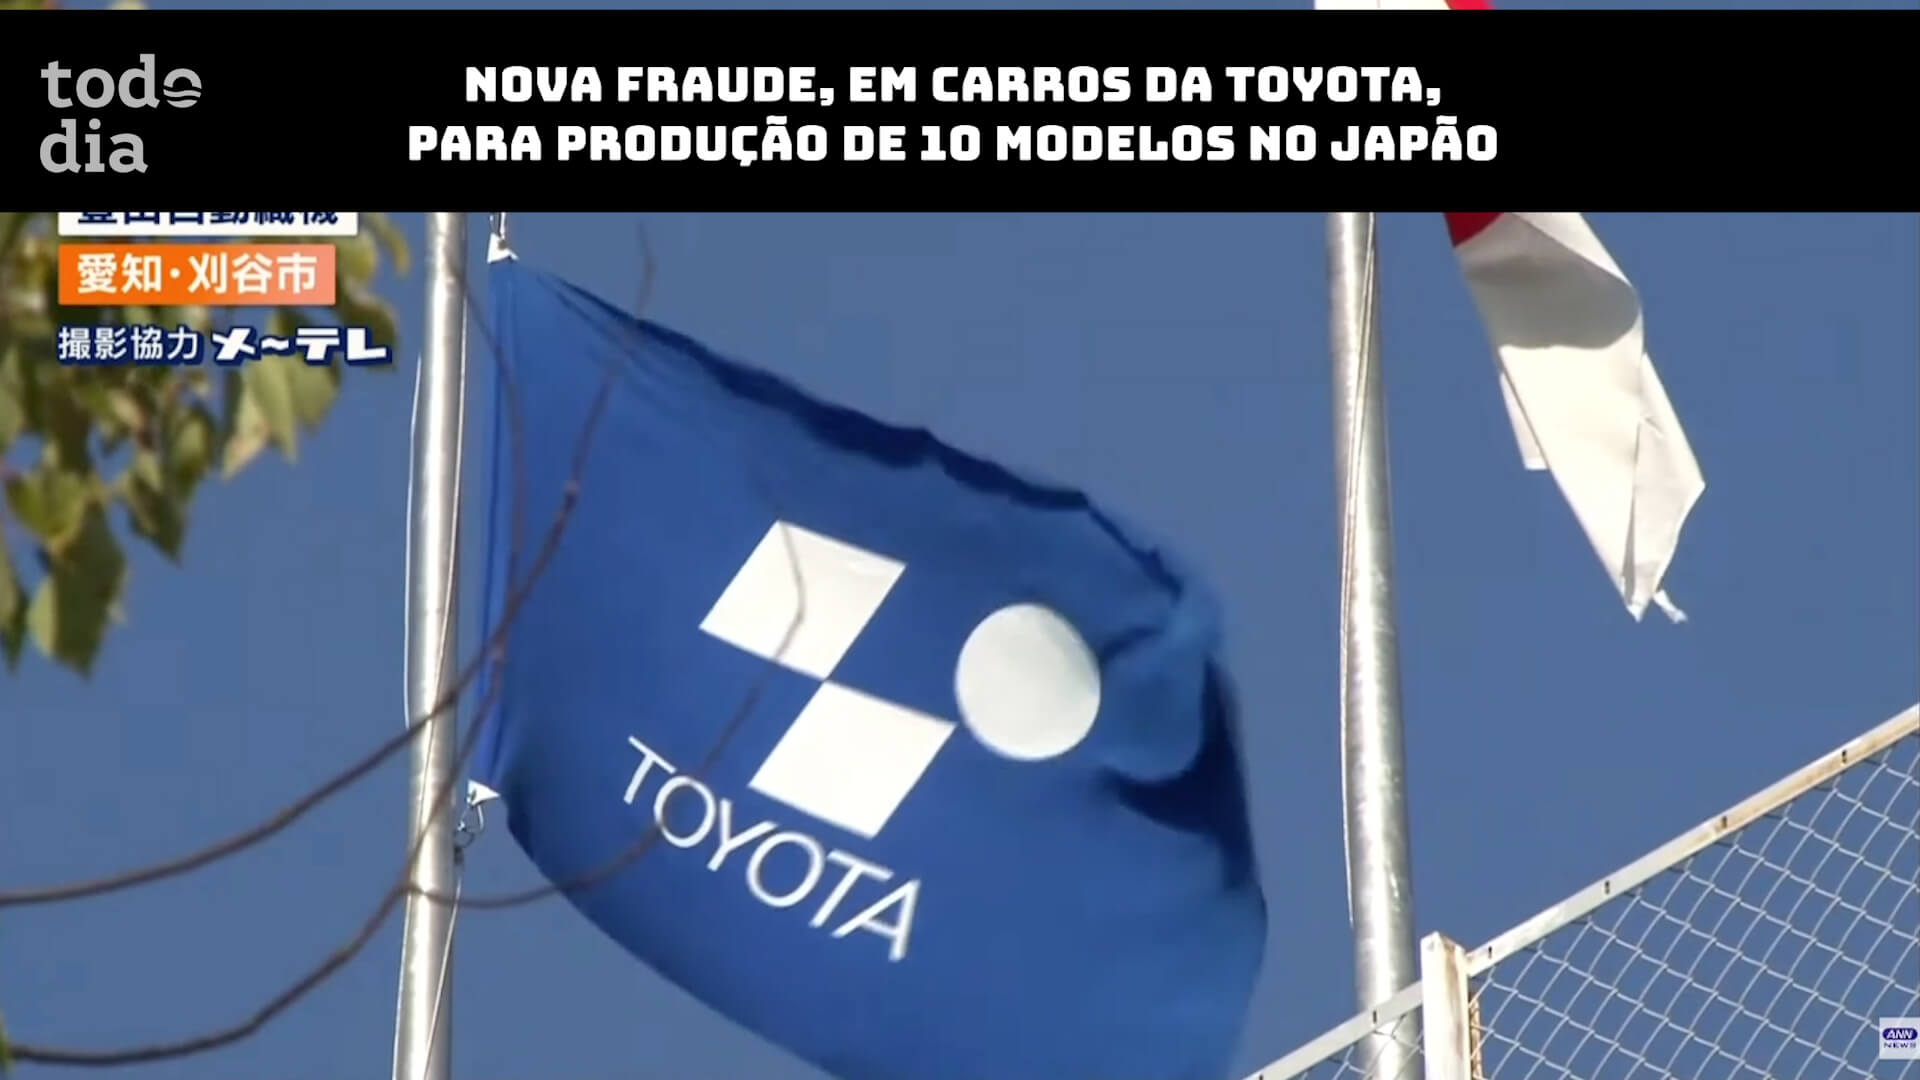 Nova fraude, em carros da Toyota, para produção de 10 modelos no Japão 